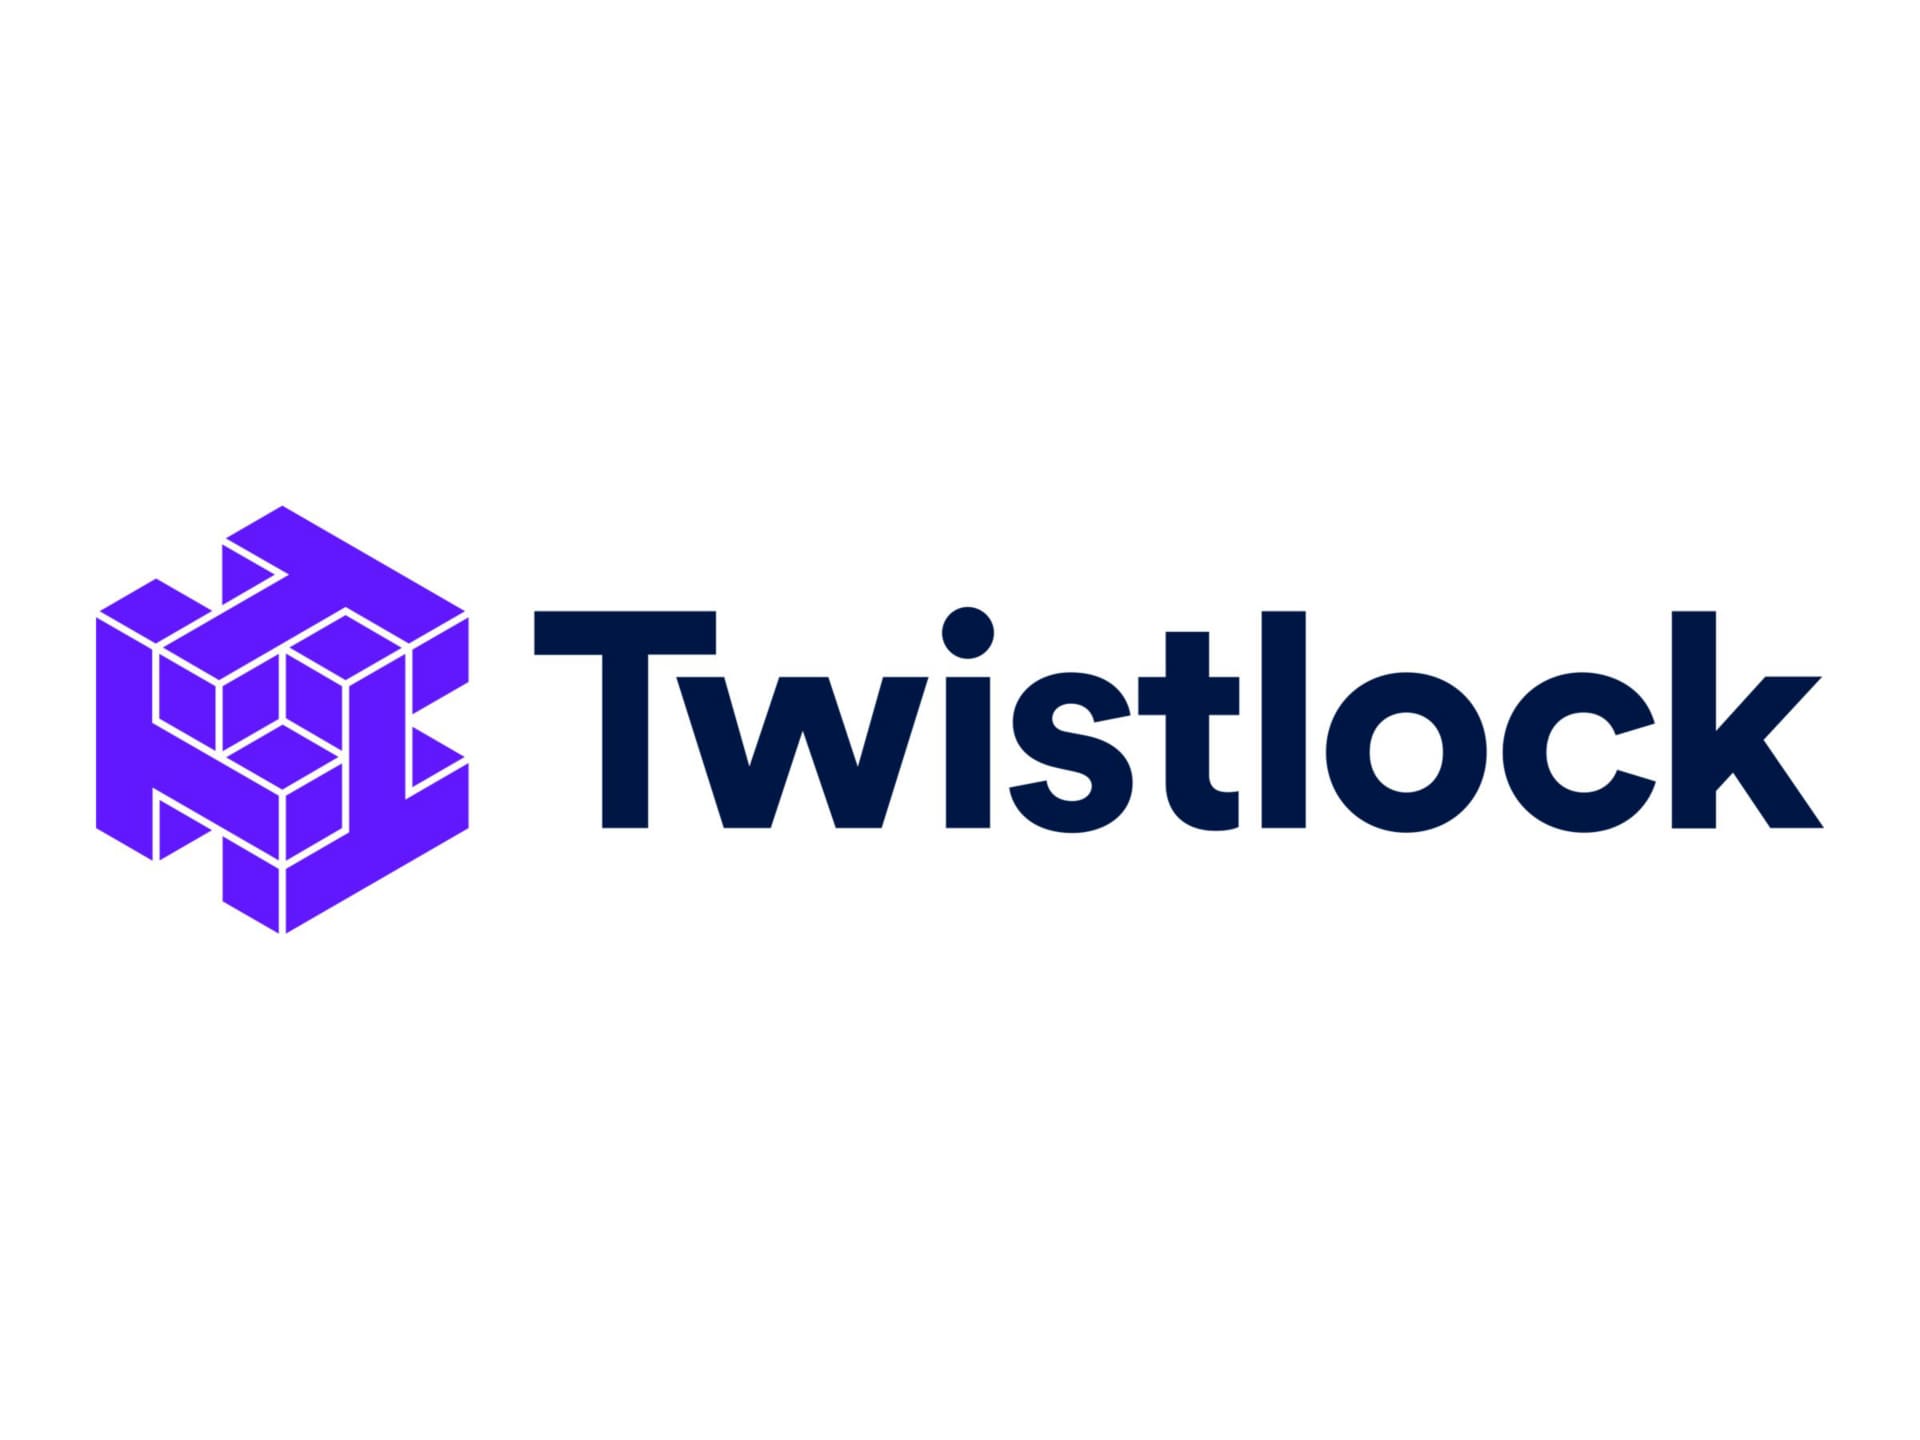 Twistlock - license - 1 license